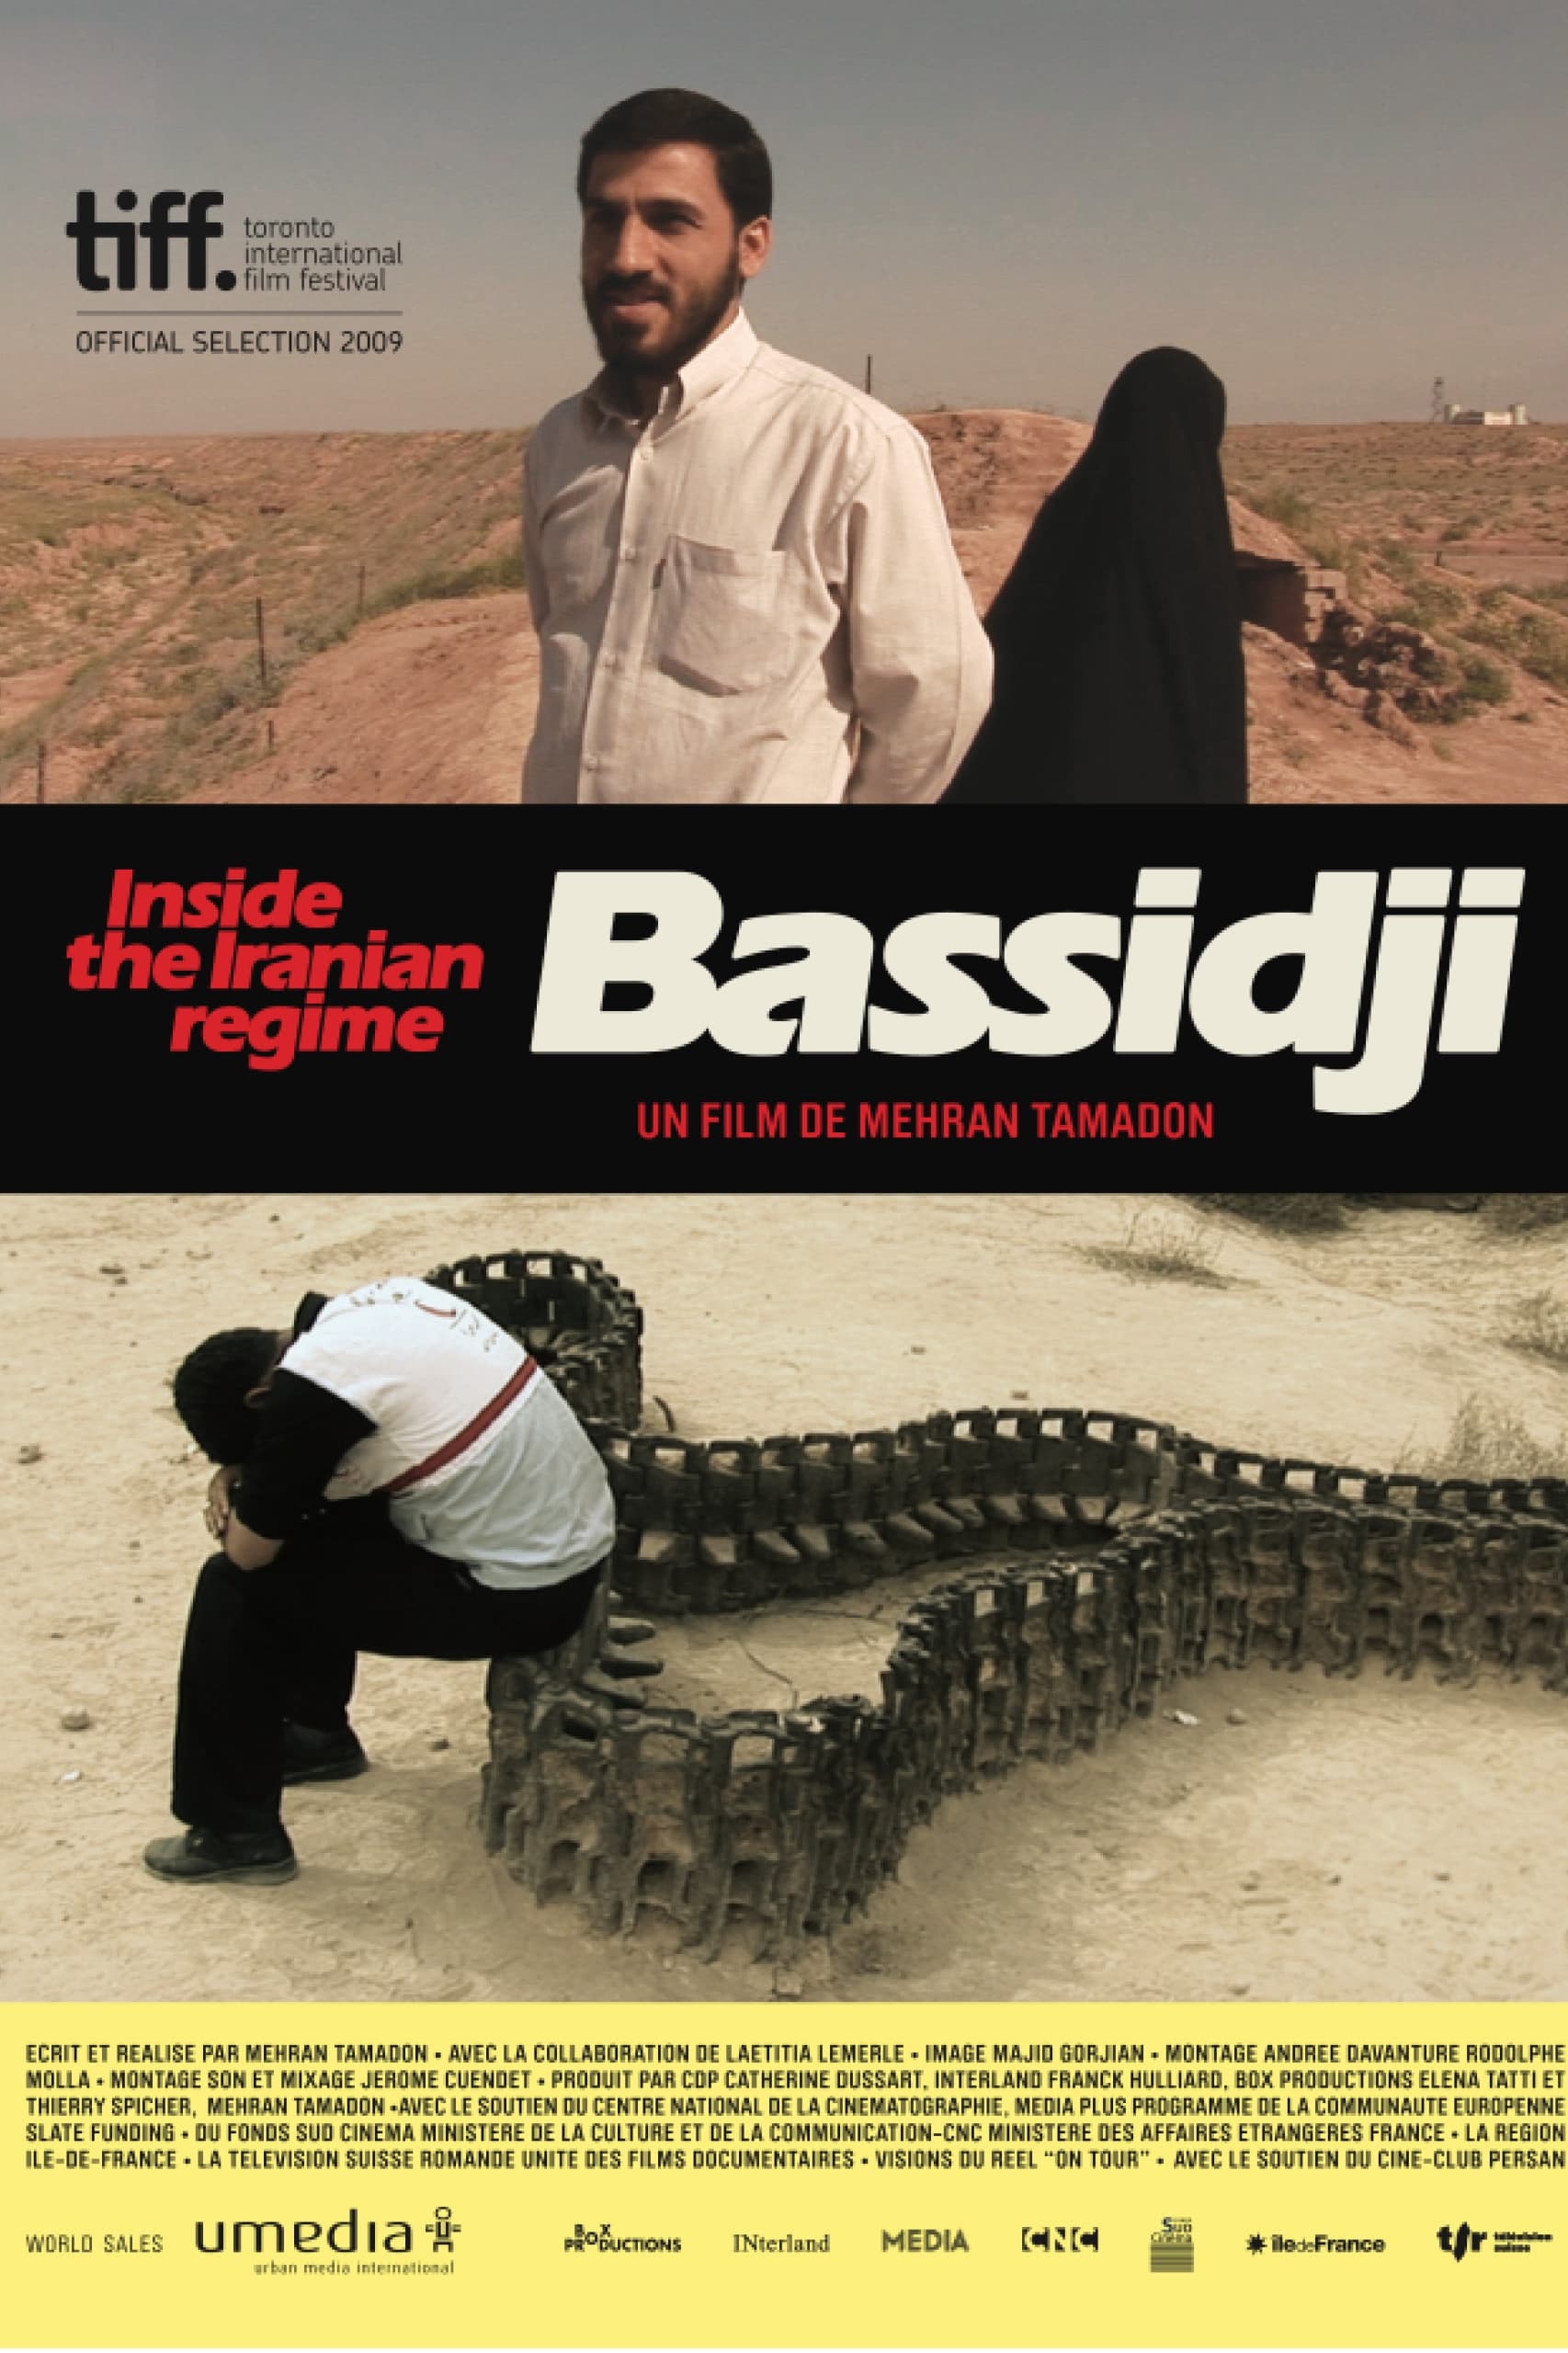 Bassidji